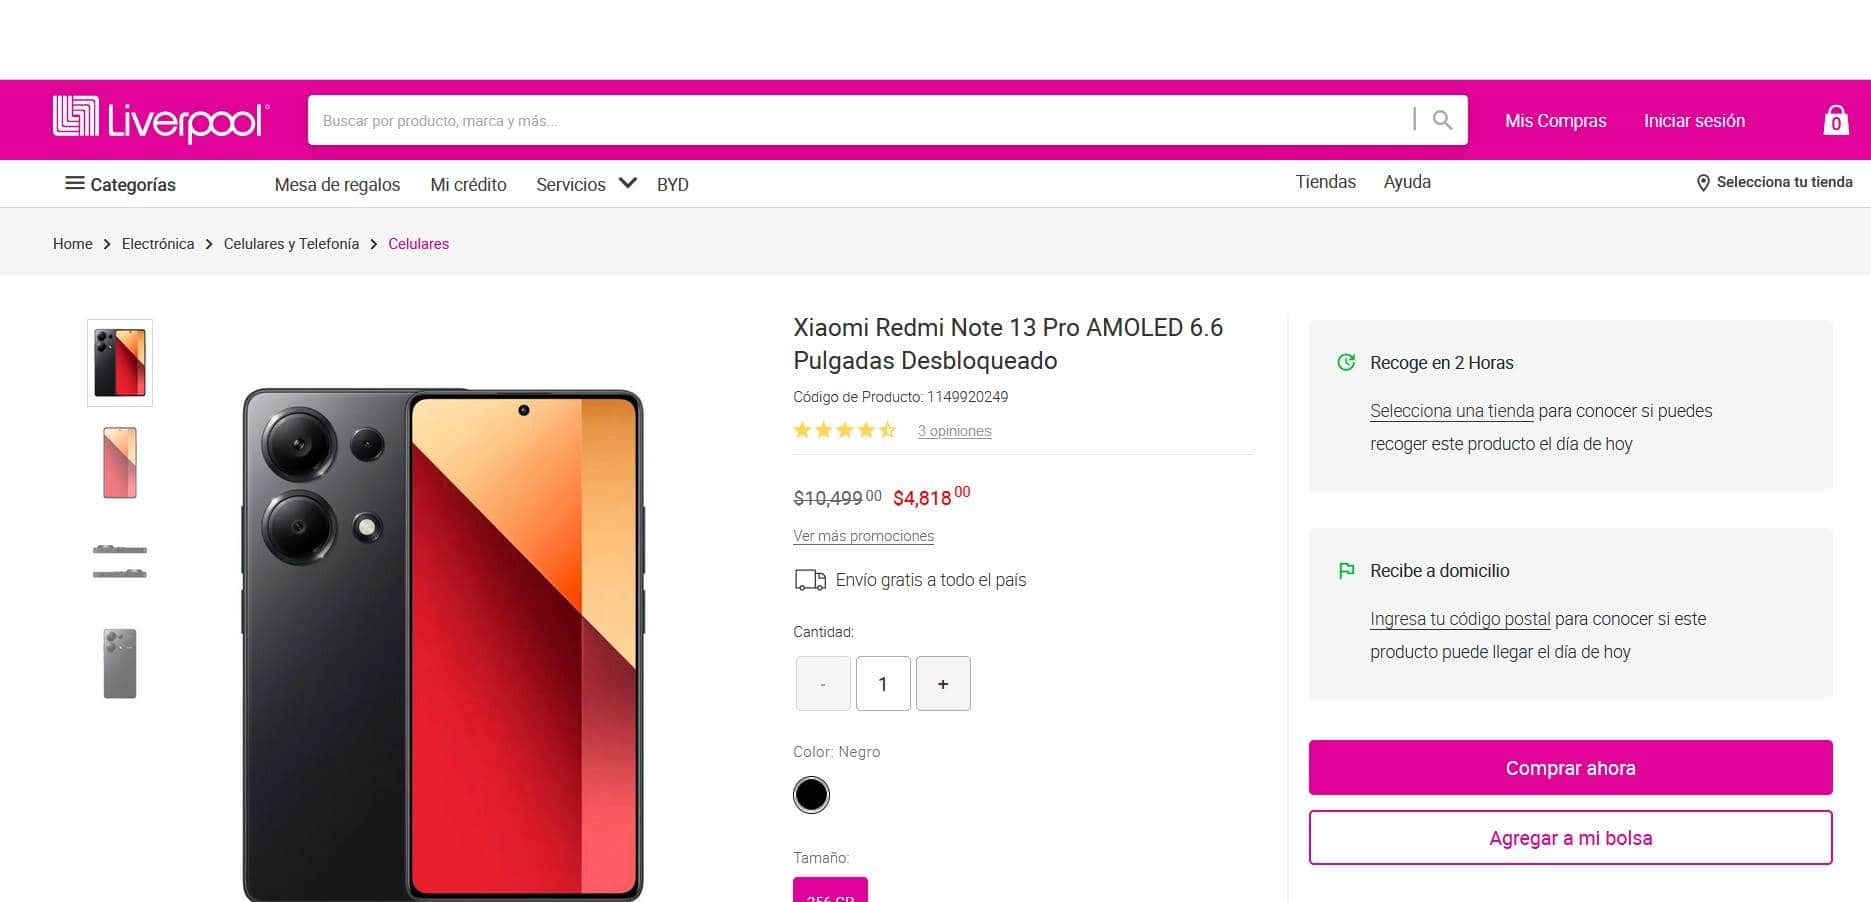 smartphone Xiaomi Redmi Note 13 Pro con rebaja